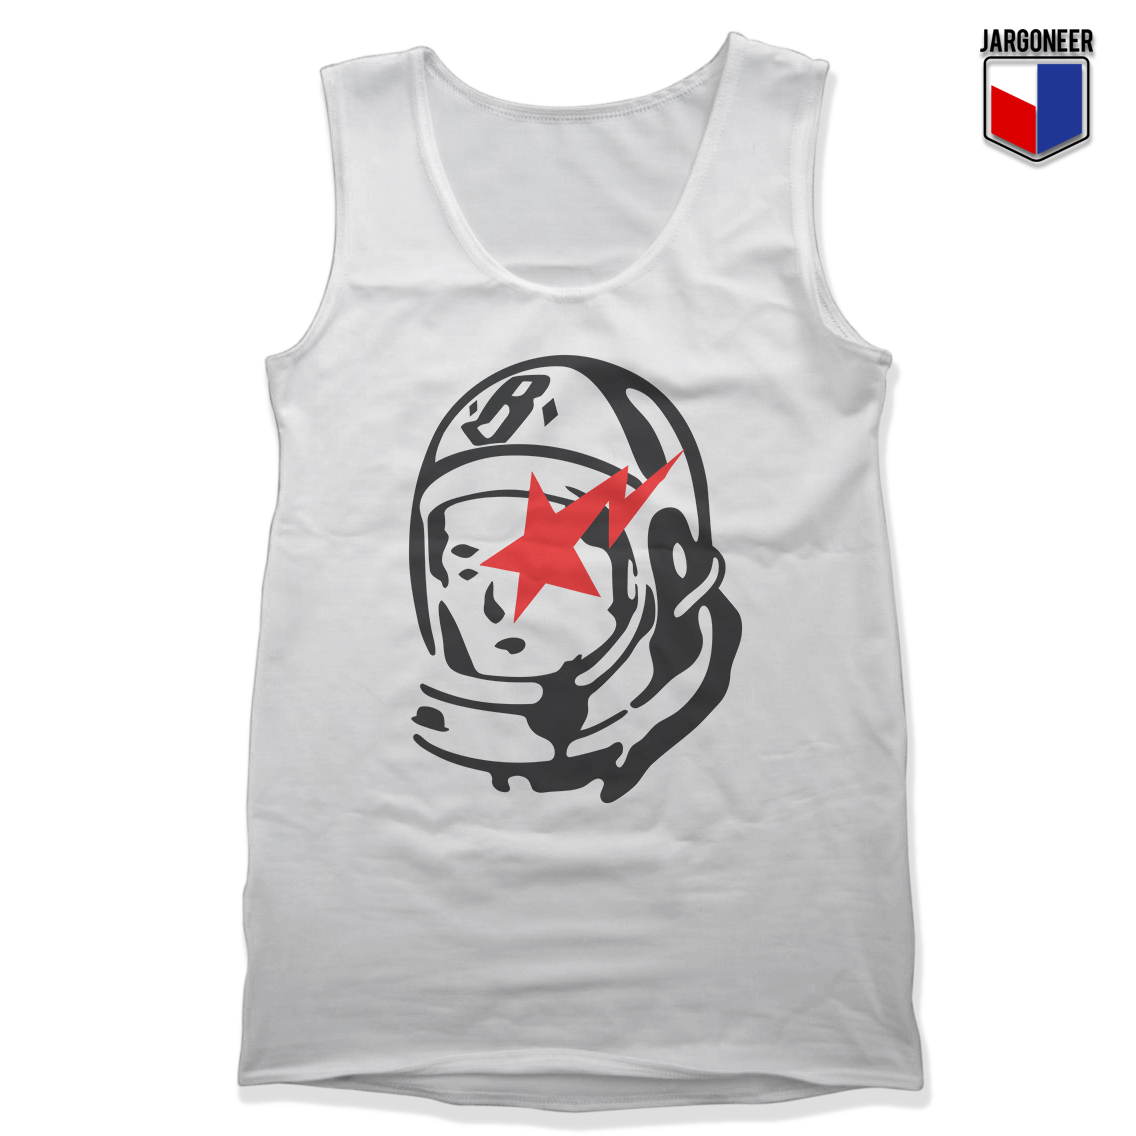 Astrobape White Tank - Shop Unique Graphic Cool Shirt Designs